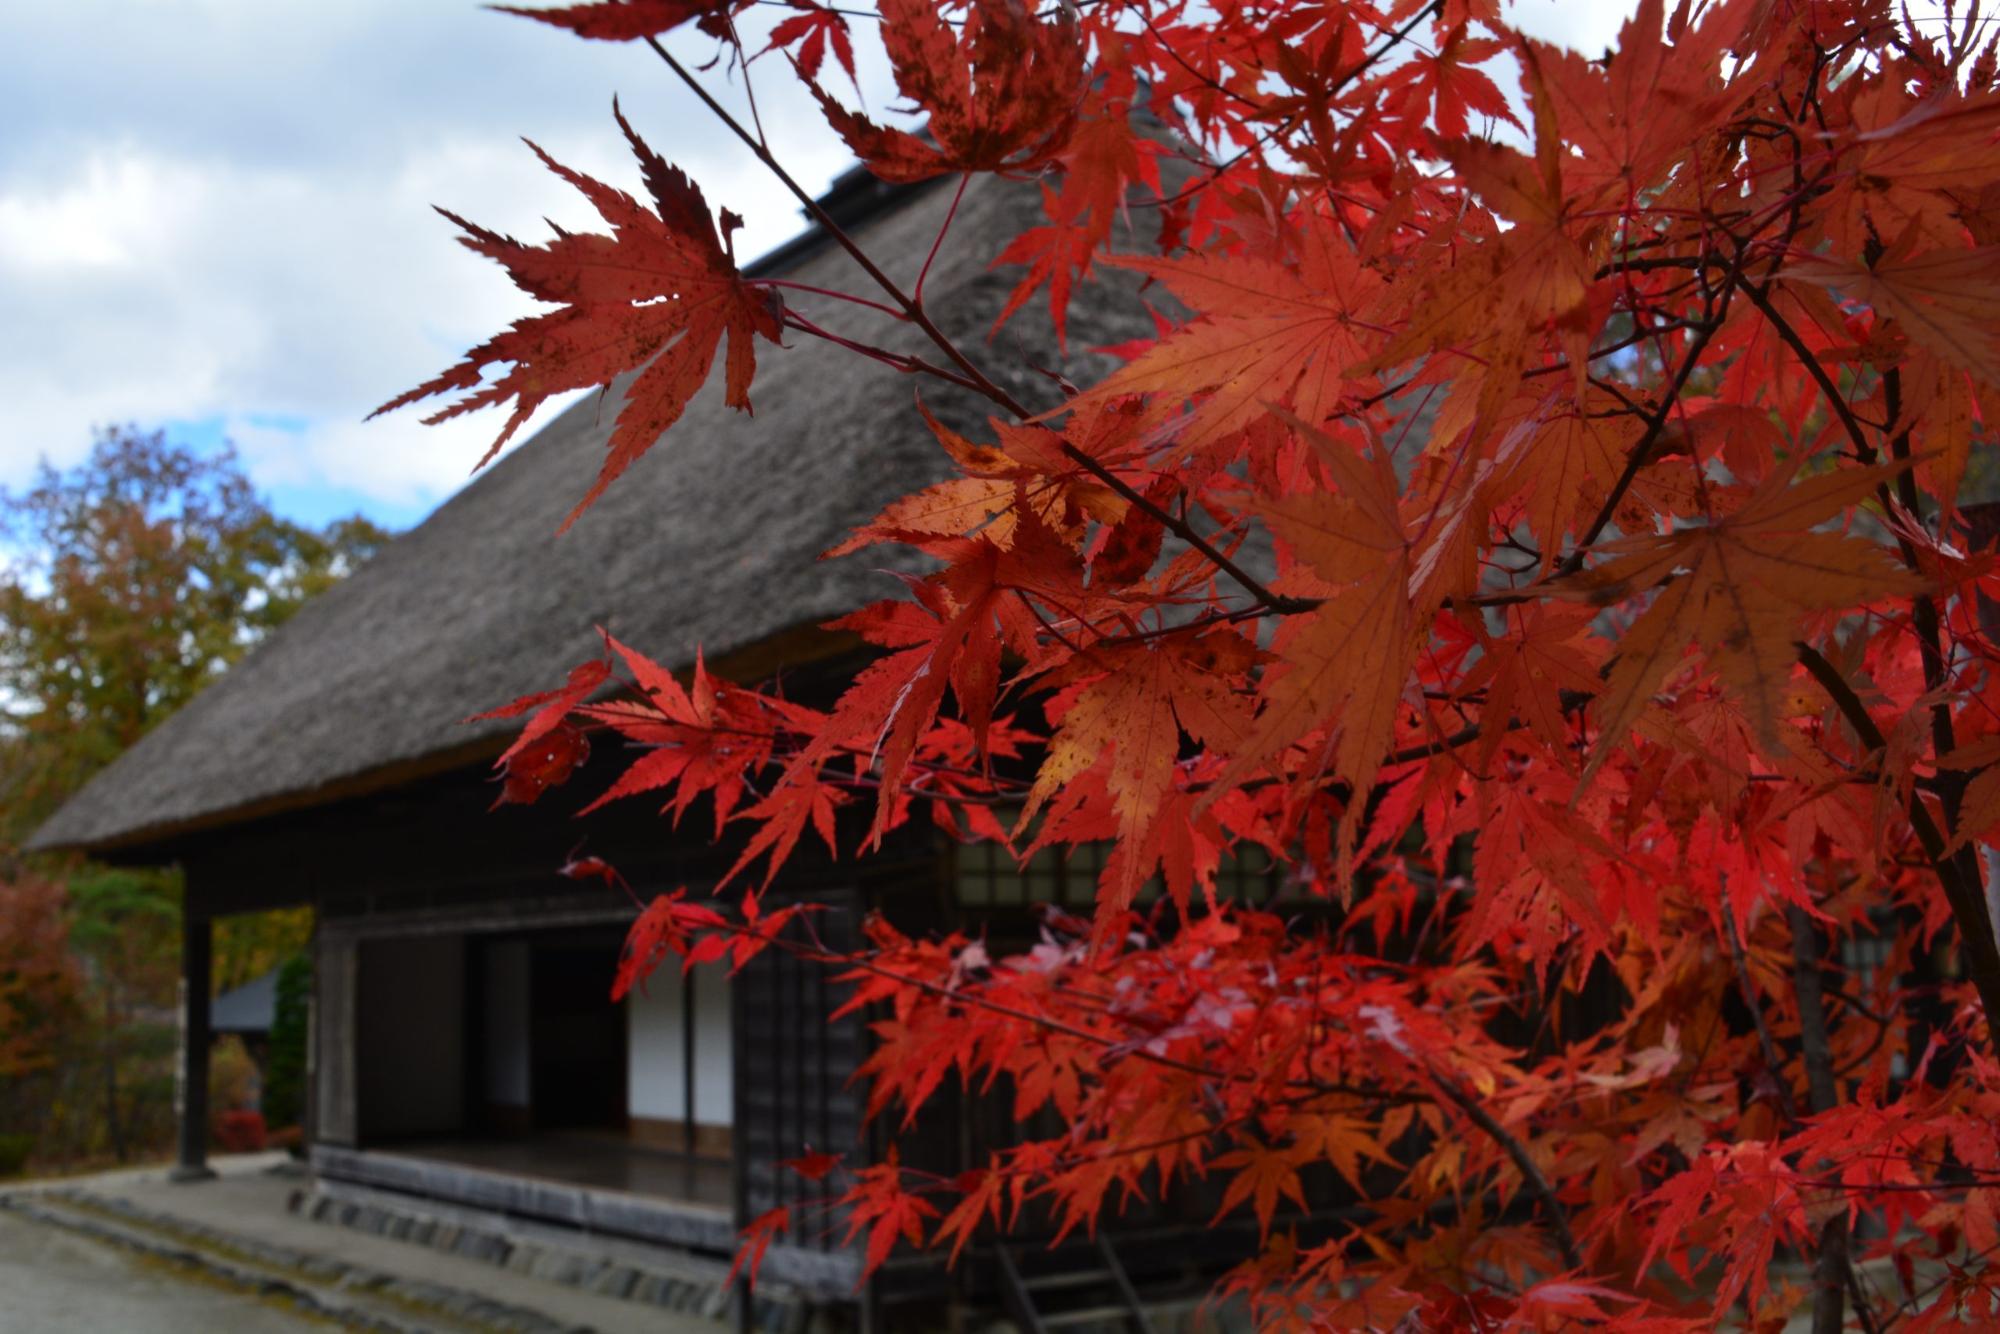 真っ赤なモミジの葉っぱをアップで写し、その奥にみえる茅葺き屋根の民家を写した写真